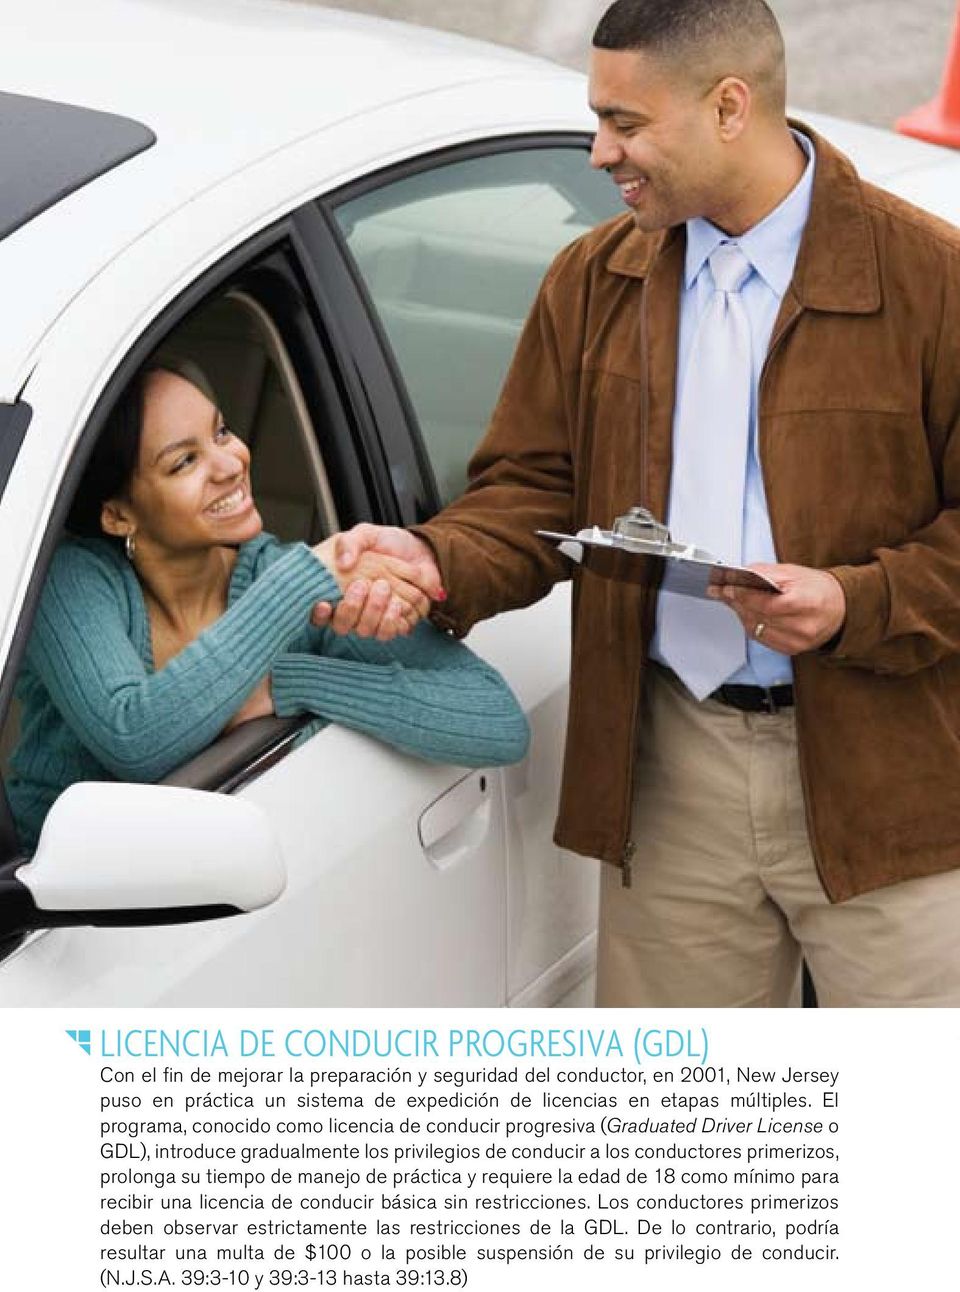 El programa, conocido como licencia de conducir progresiva (Graduated Driver License o GDL), introduce gradualmente los privilegios de conducir a los conductores primerizos, prolonga su